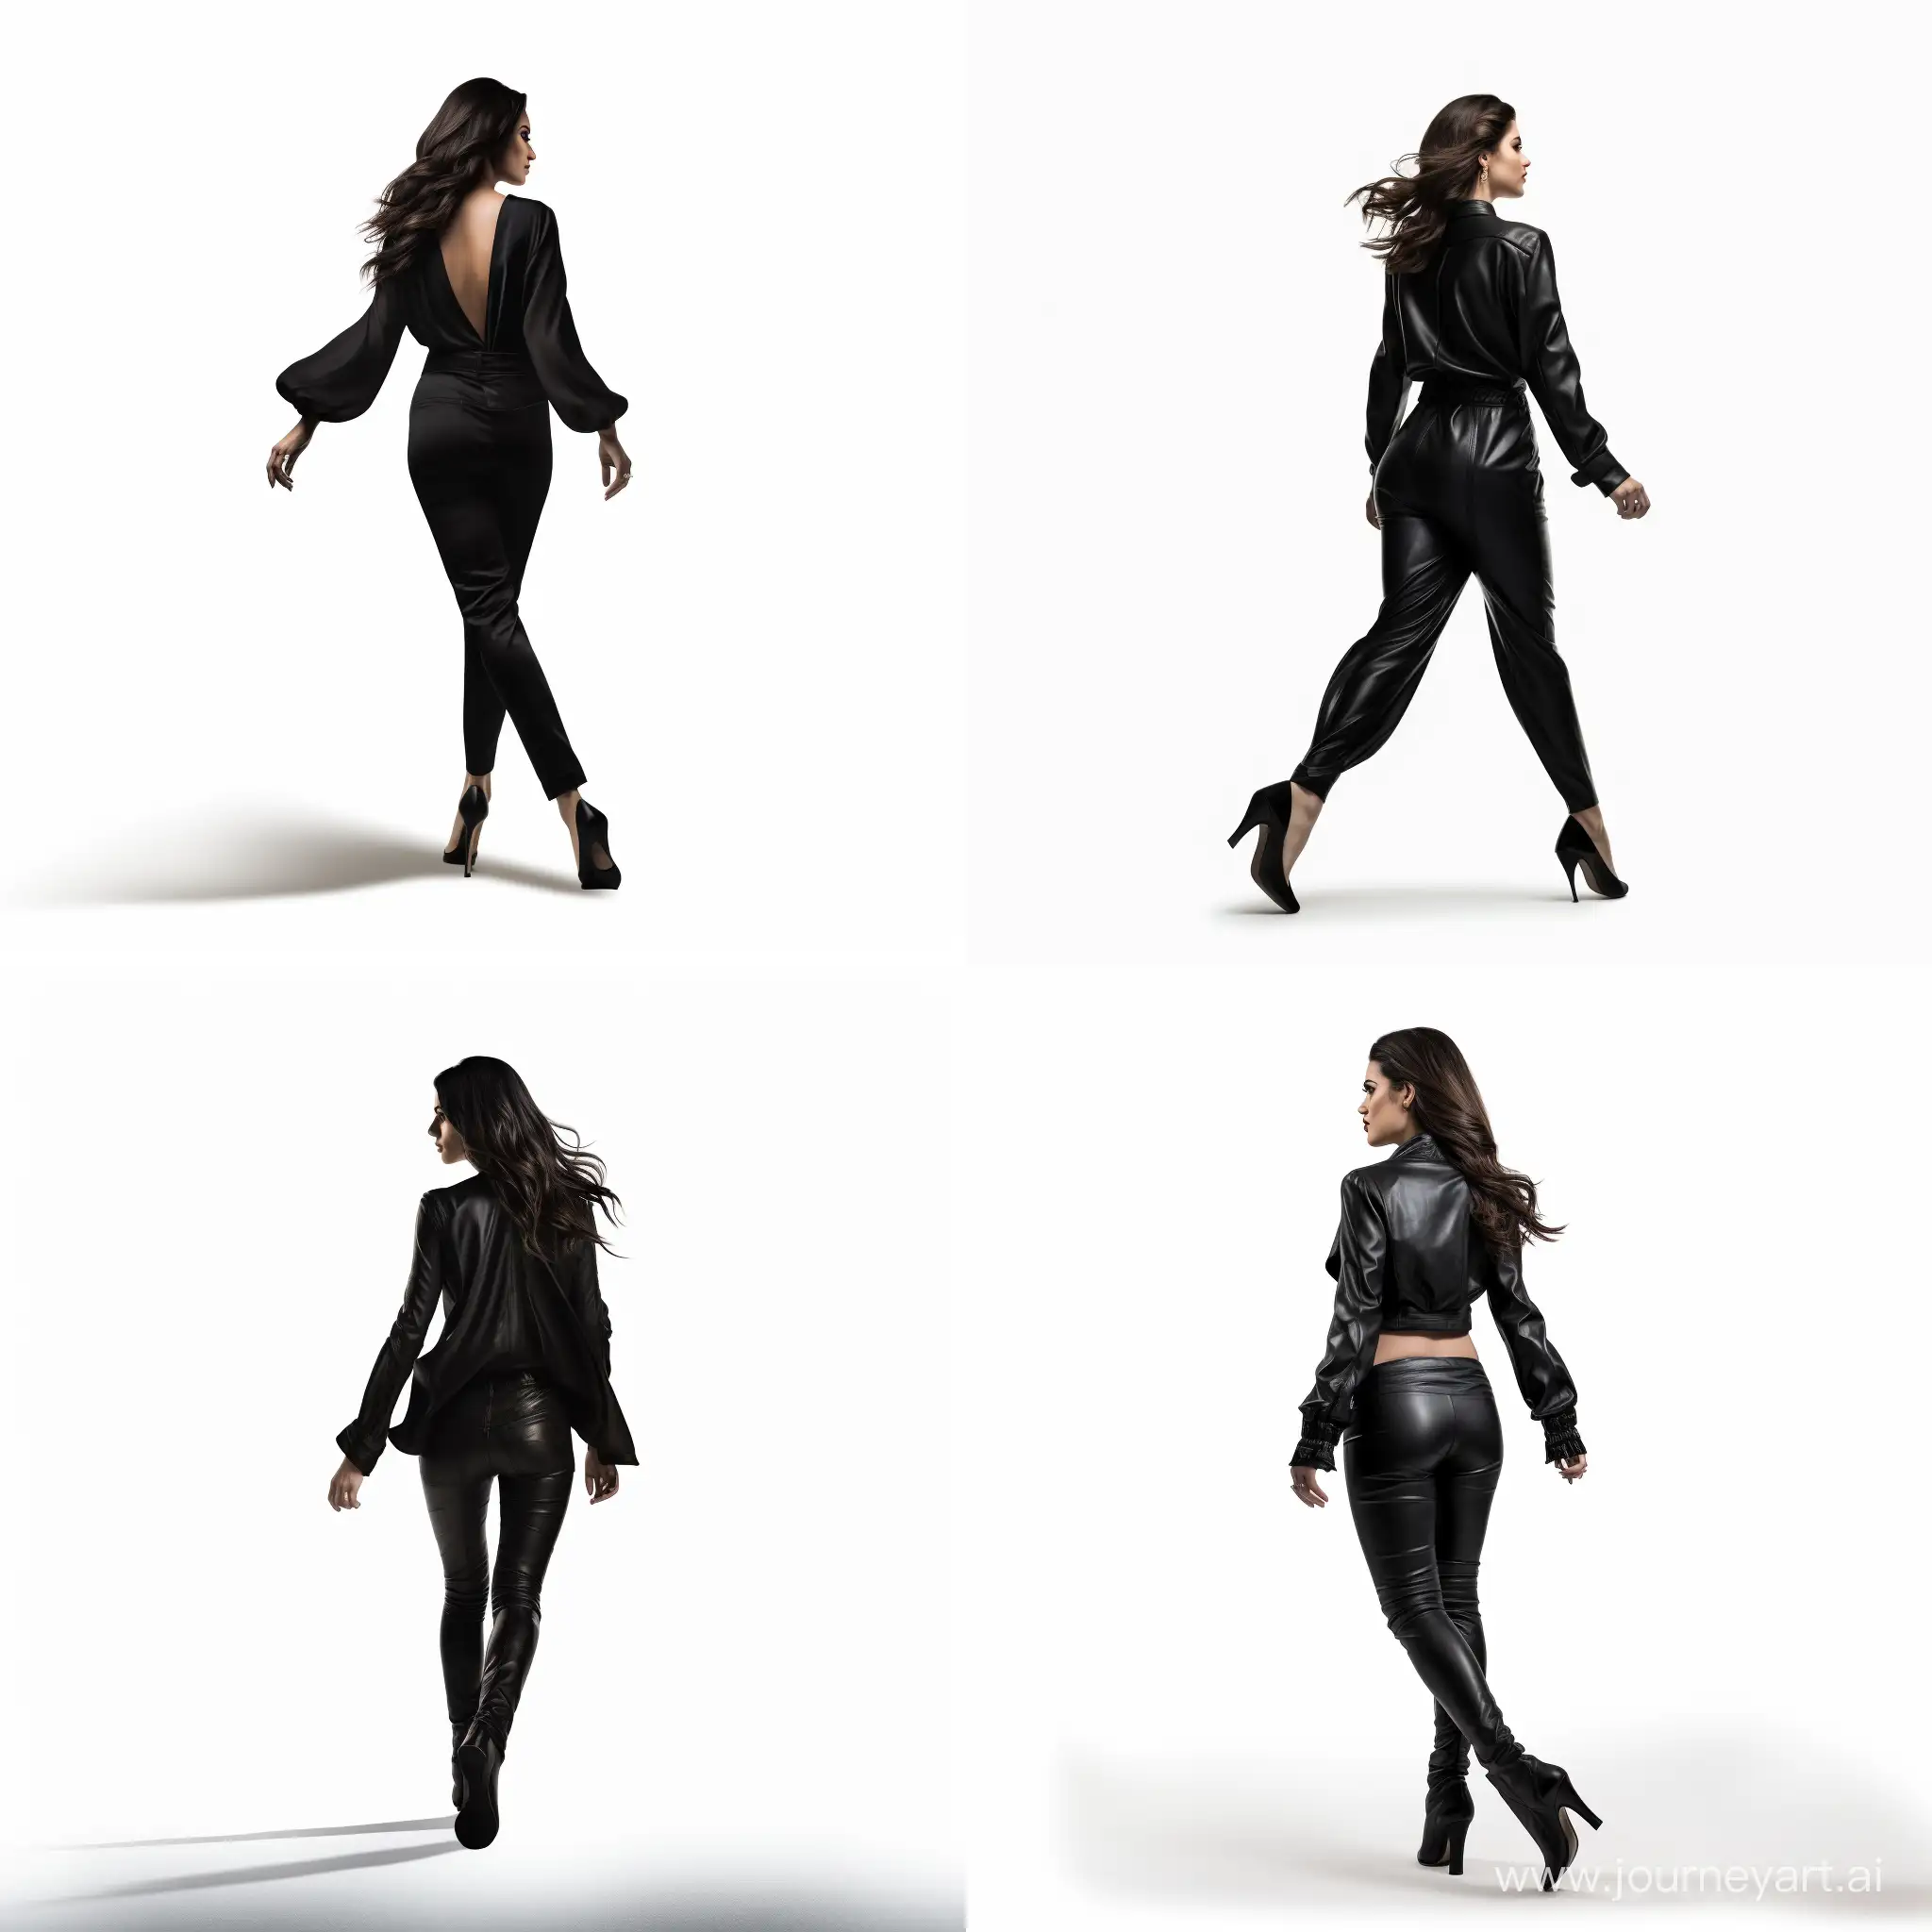 女人，双臂伸直，穿着高跟鞋，黑衣服，向前走路的姿势，白底图片
